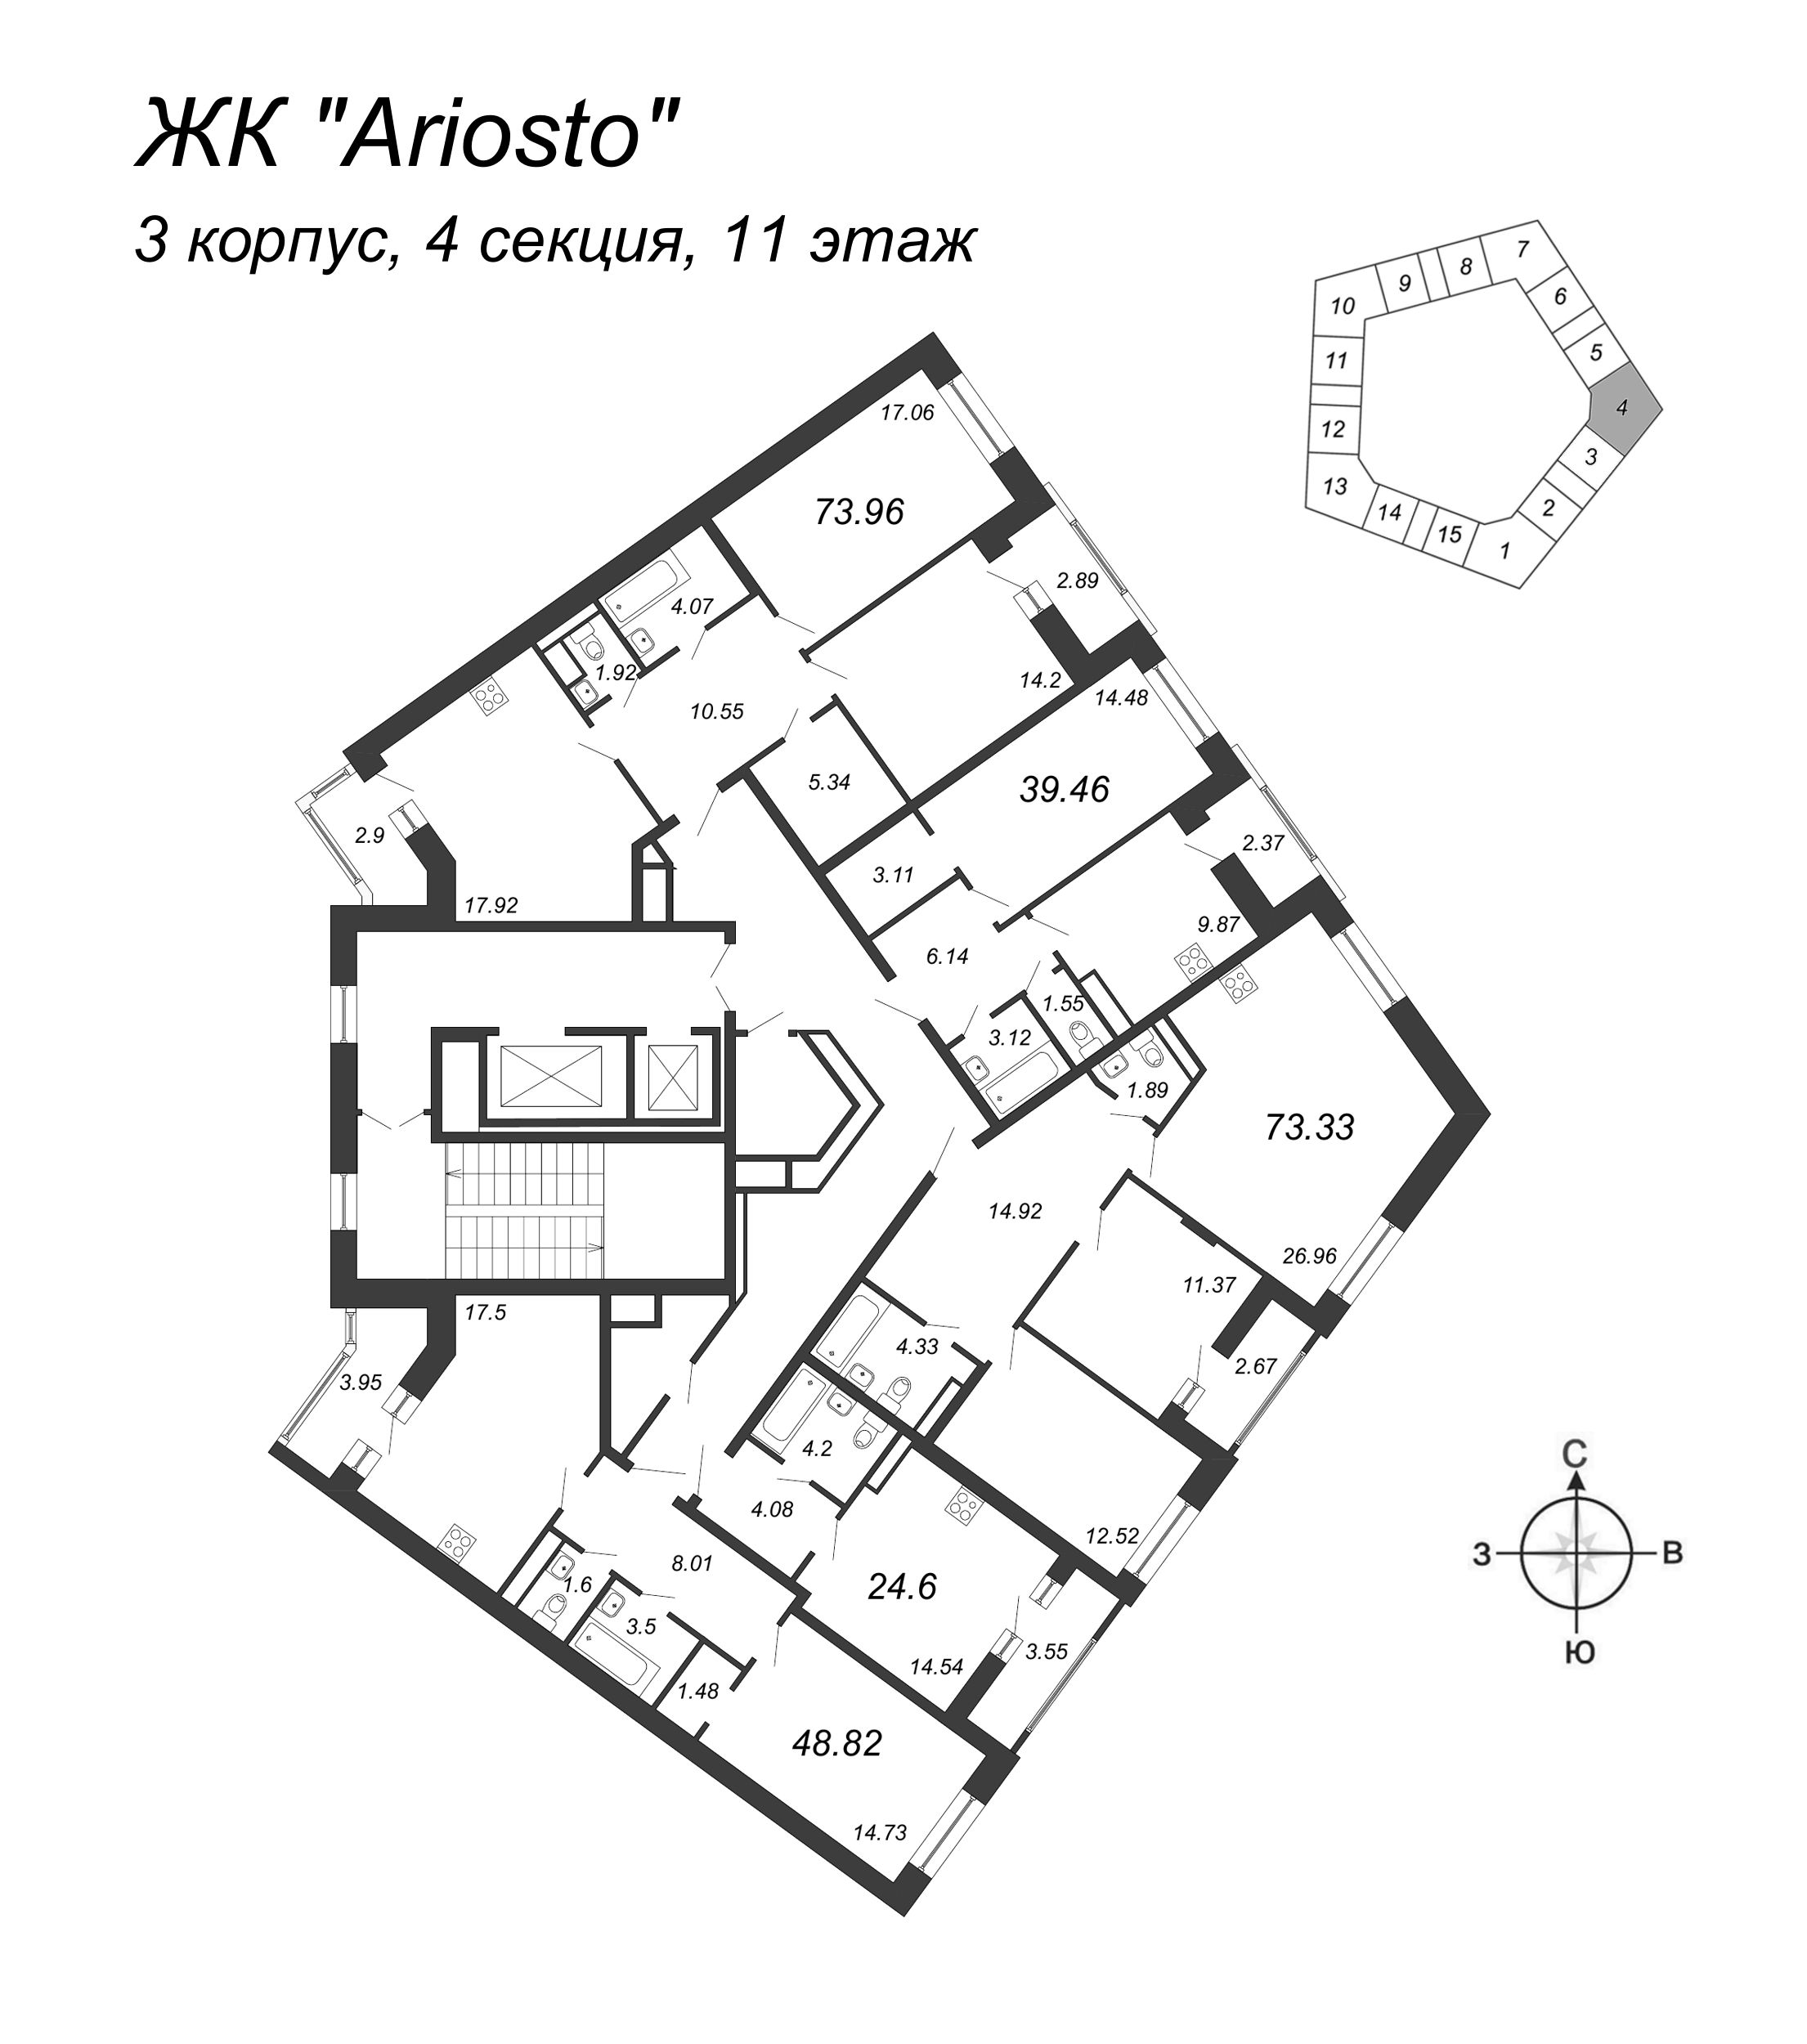 3-комнатная (Евро) квартира, 73.96 м² в ЖК "Ariosto" - планировка этажа